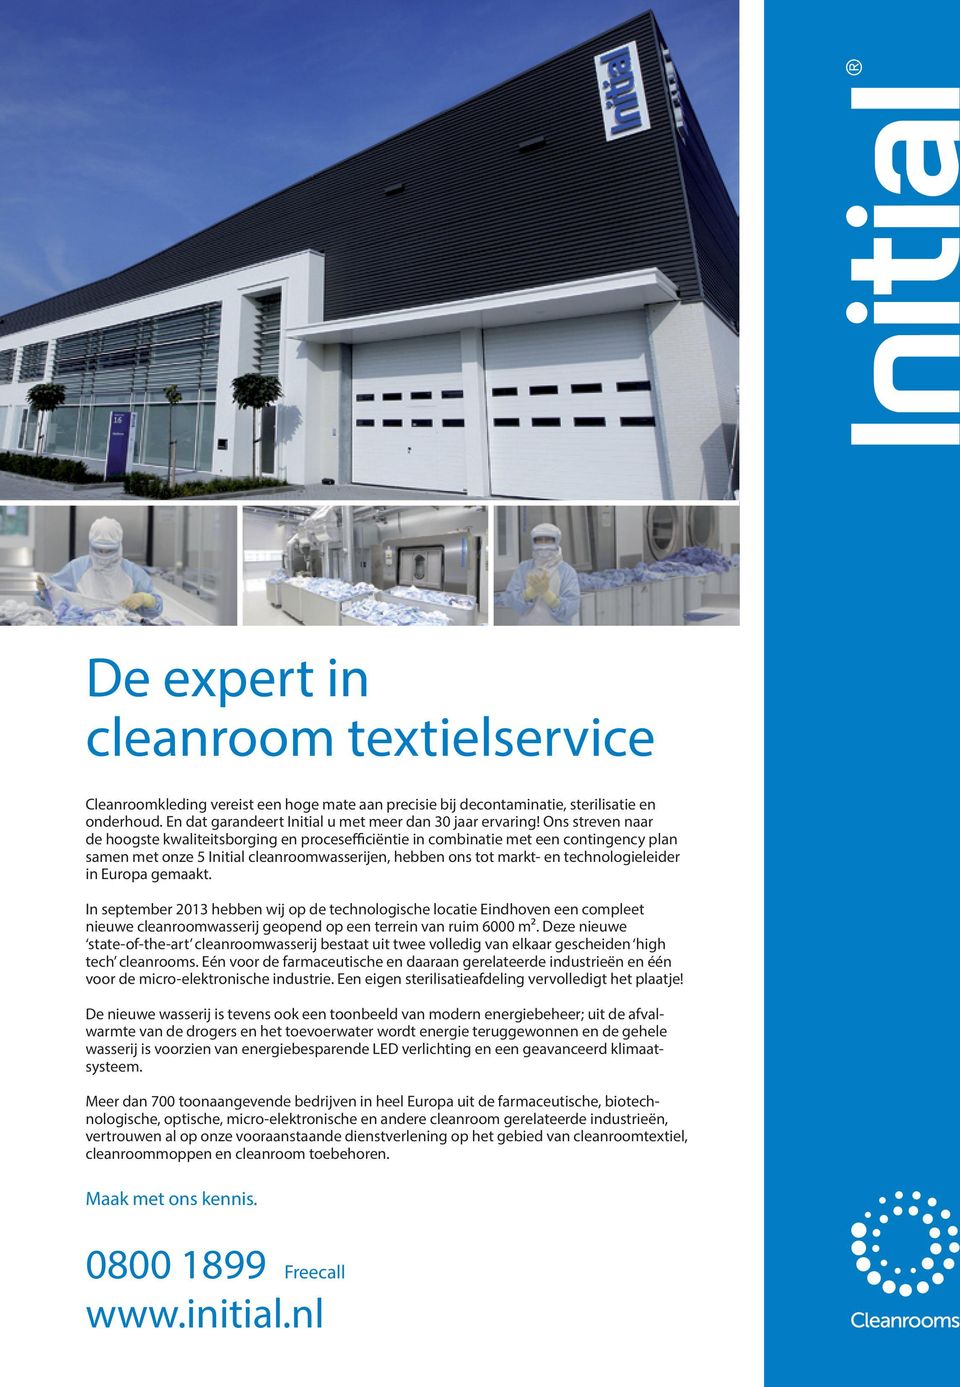 Europa gemaakt. In september 2013 hebben wij op de technologische locatie Eindhoven een compleet nieuwe cleanroomwasserij geopend op een terrein van ruim 6000 m².